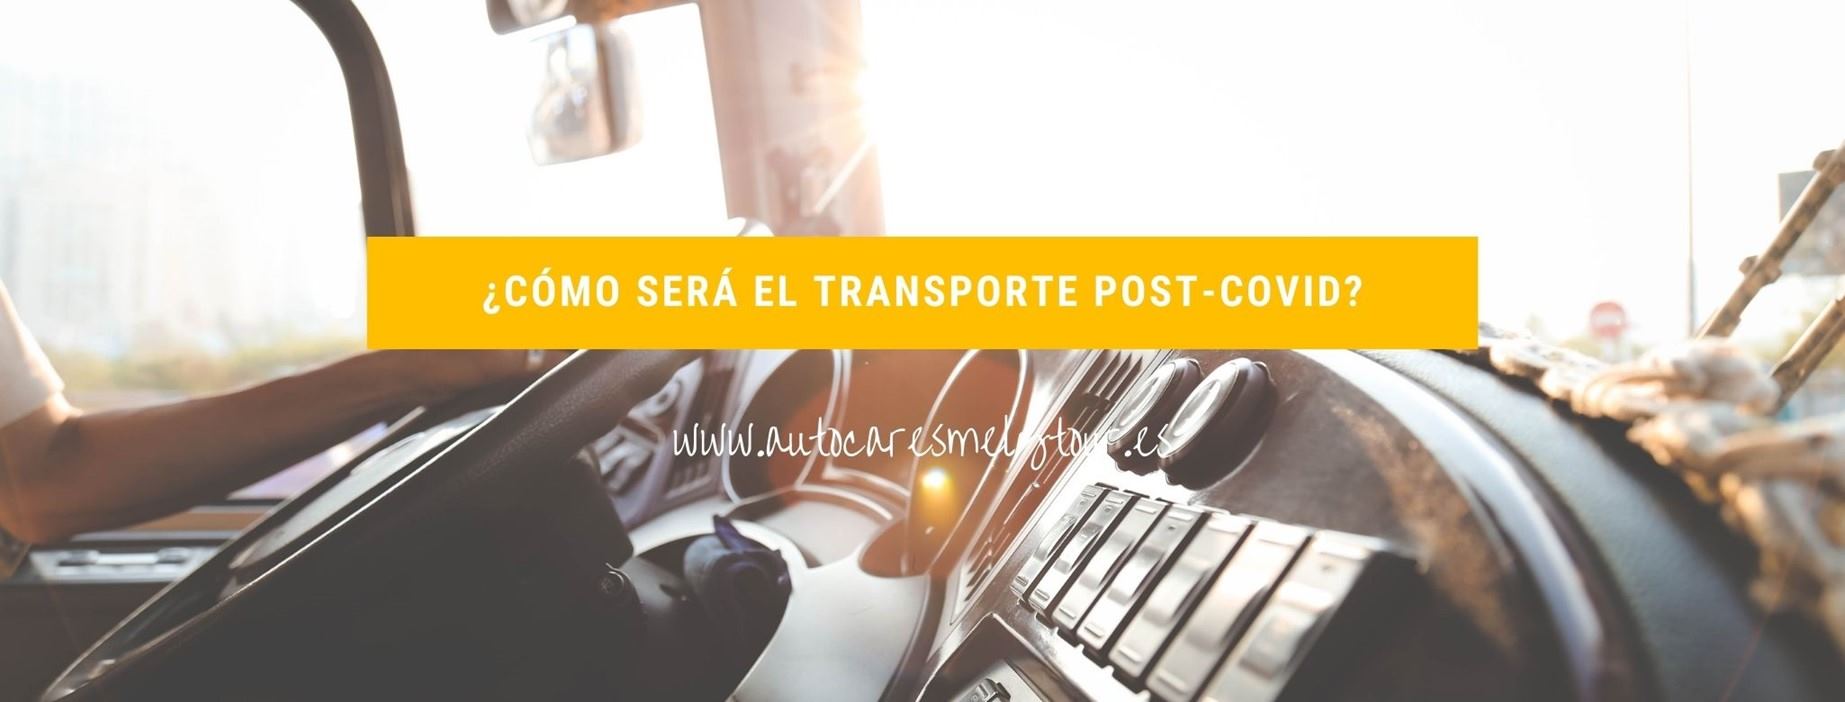 transporte-post-covid